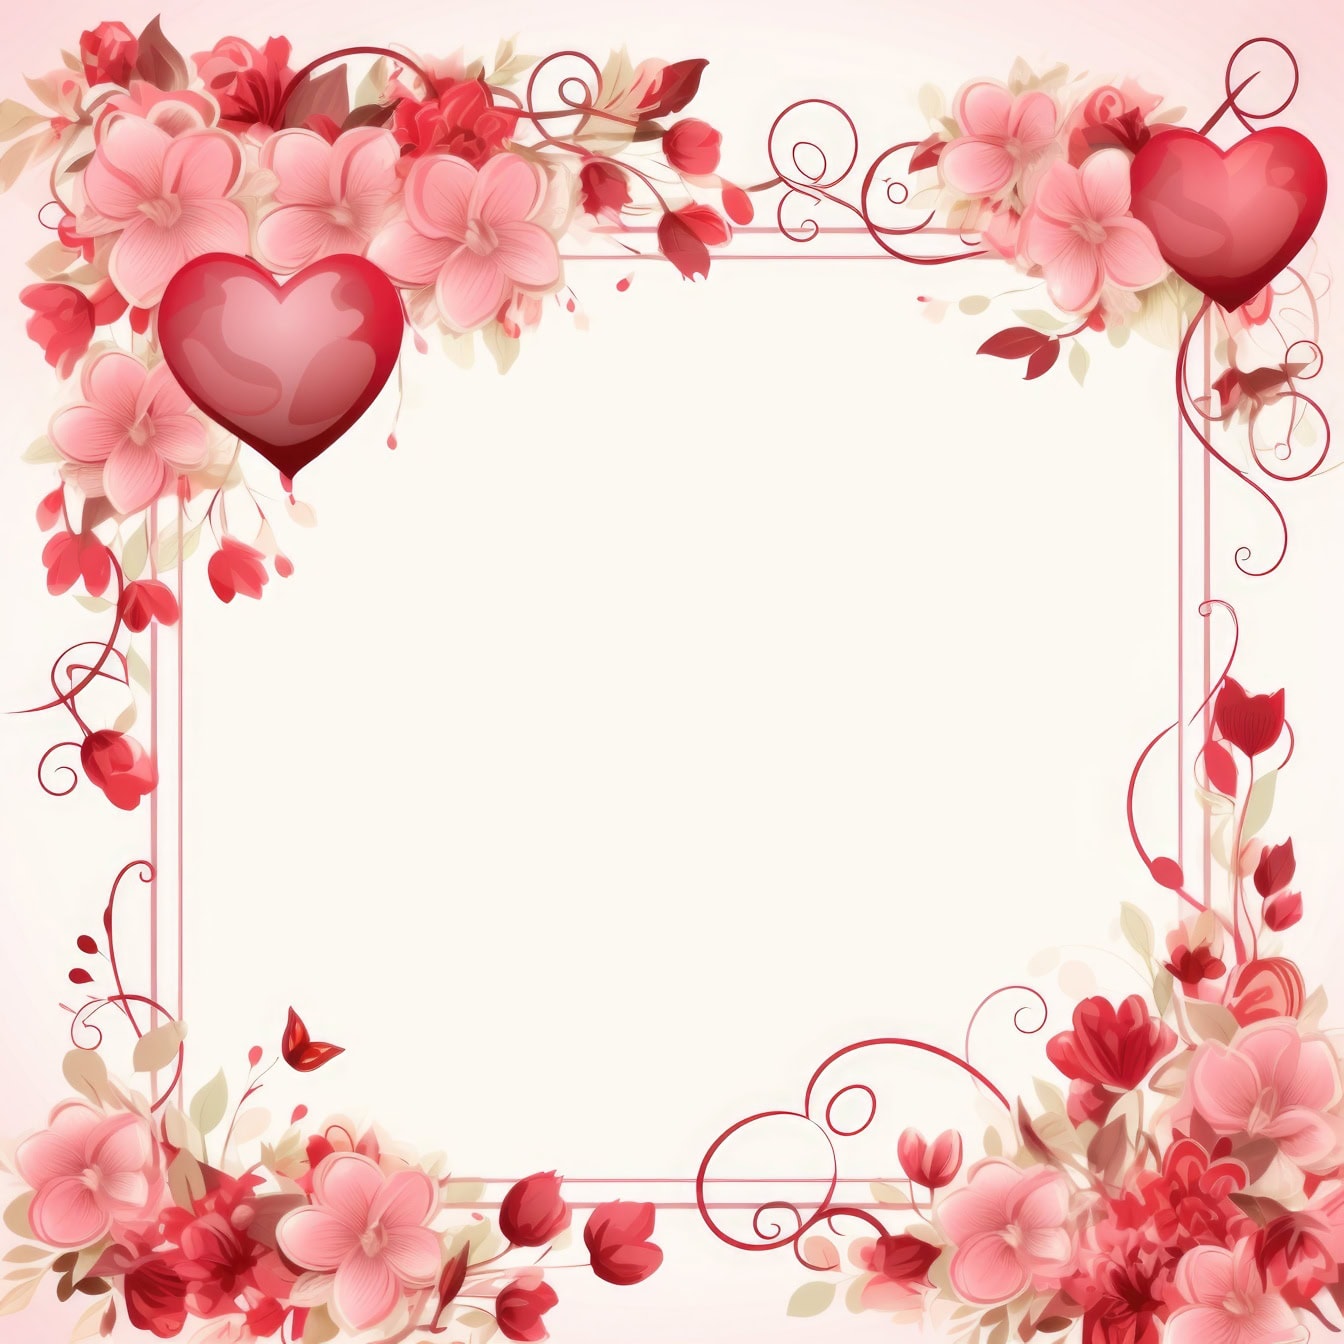 Πρότυπο ευχετήριας κάρτας για την Ημέρα του Αγίου Βαλεντίνου με πλαίσιο λουλουδιών και καρδιών